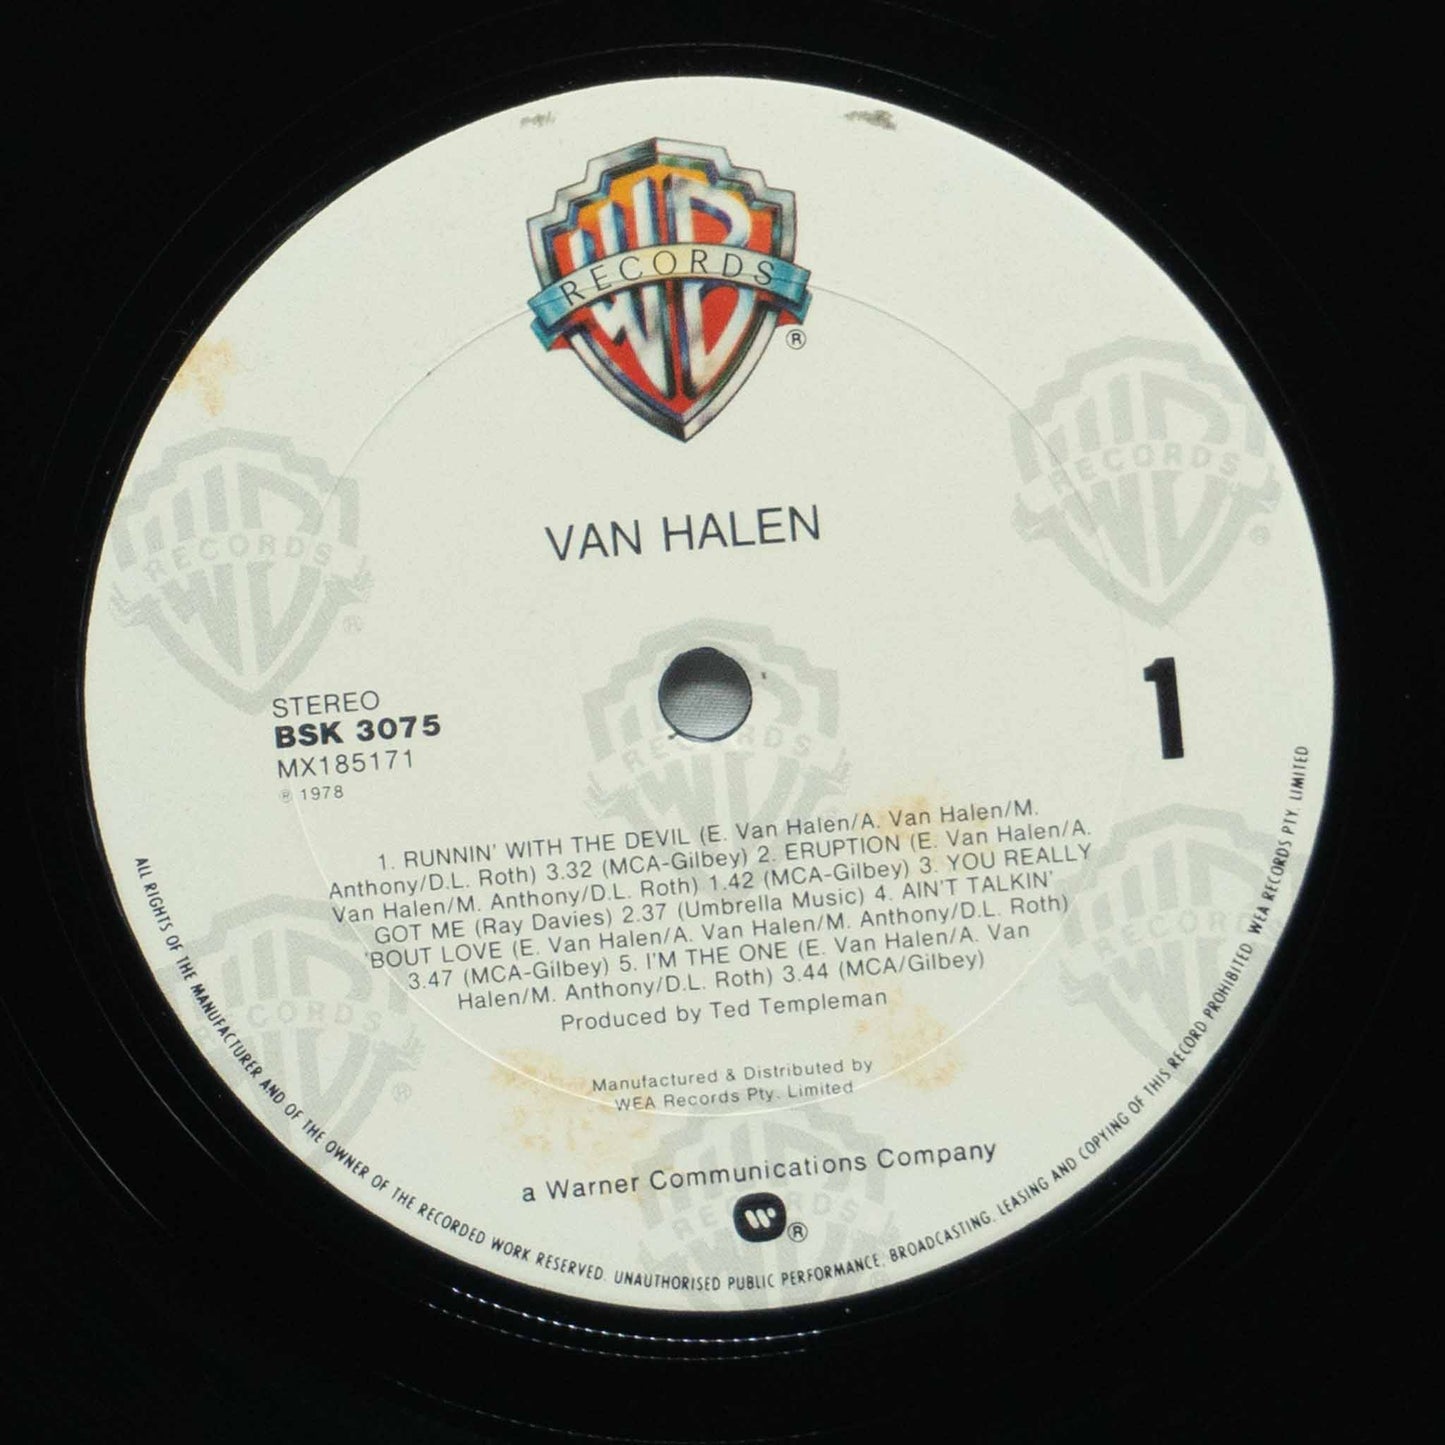 Van Halen – Van Halen